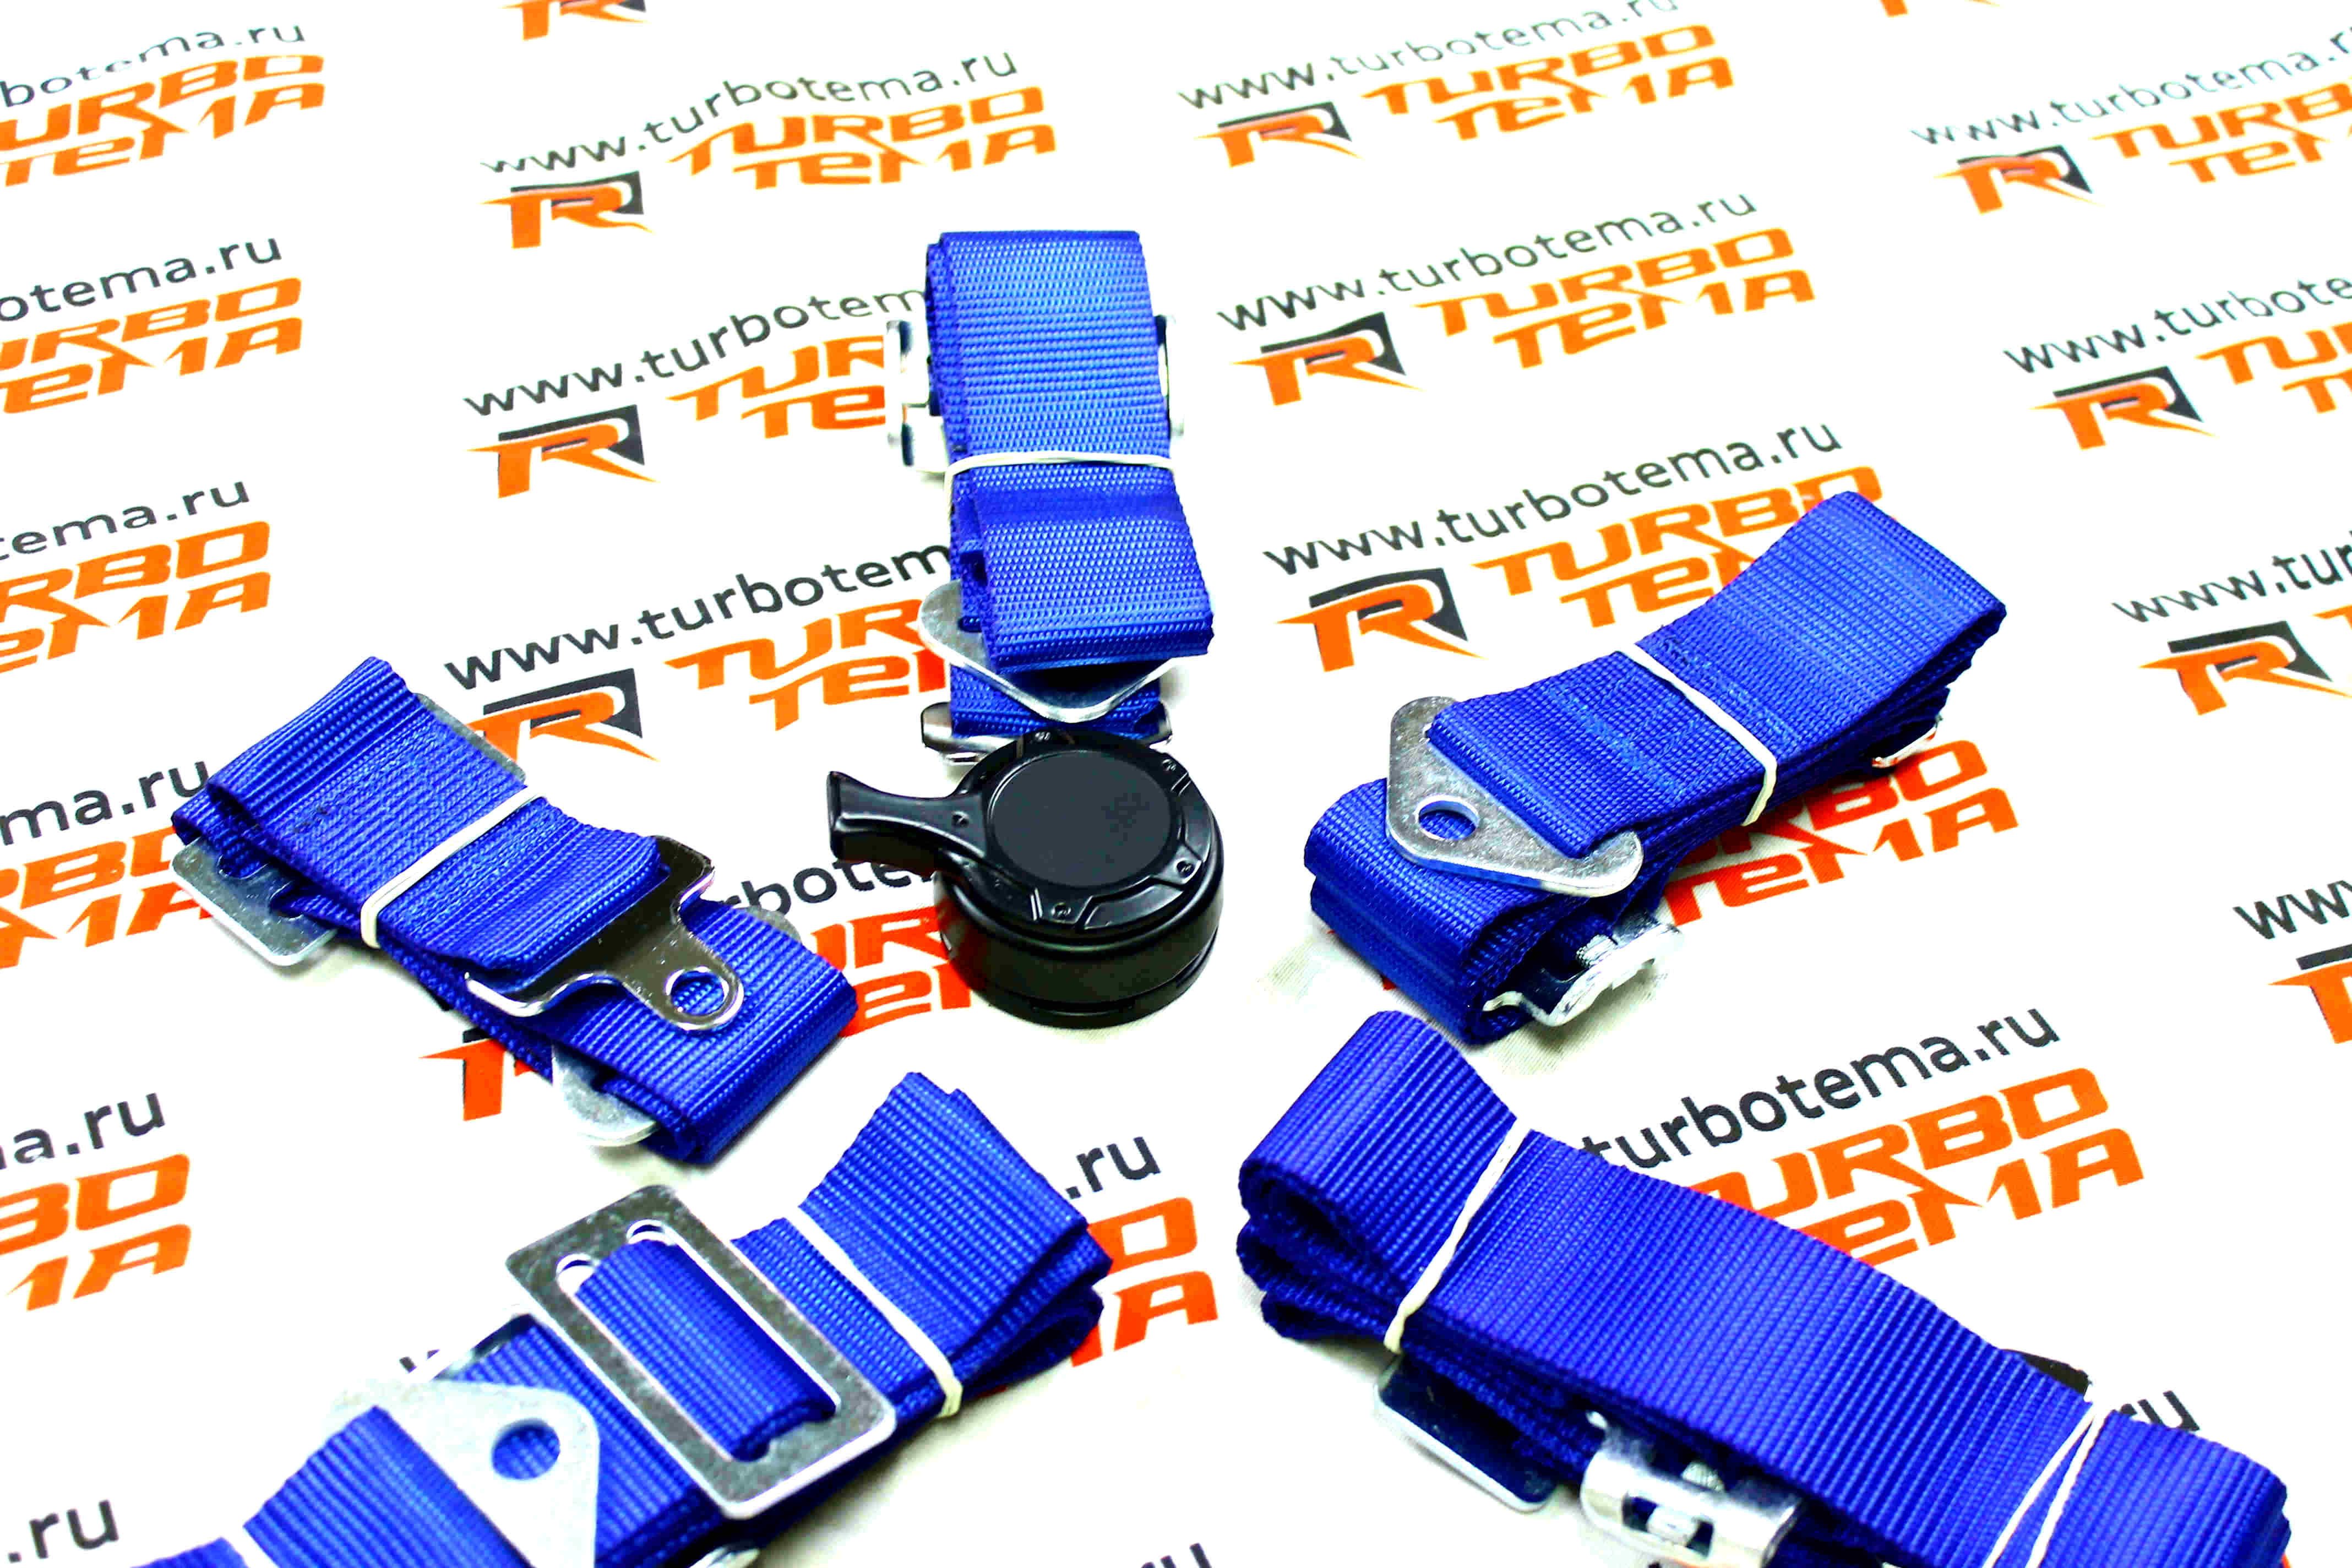 Ремни безопасности "TURBOTEMA" 5-ти точечные, 2" ширина, быстросъемные (синие) JBR4001-5. Фото �3